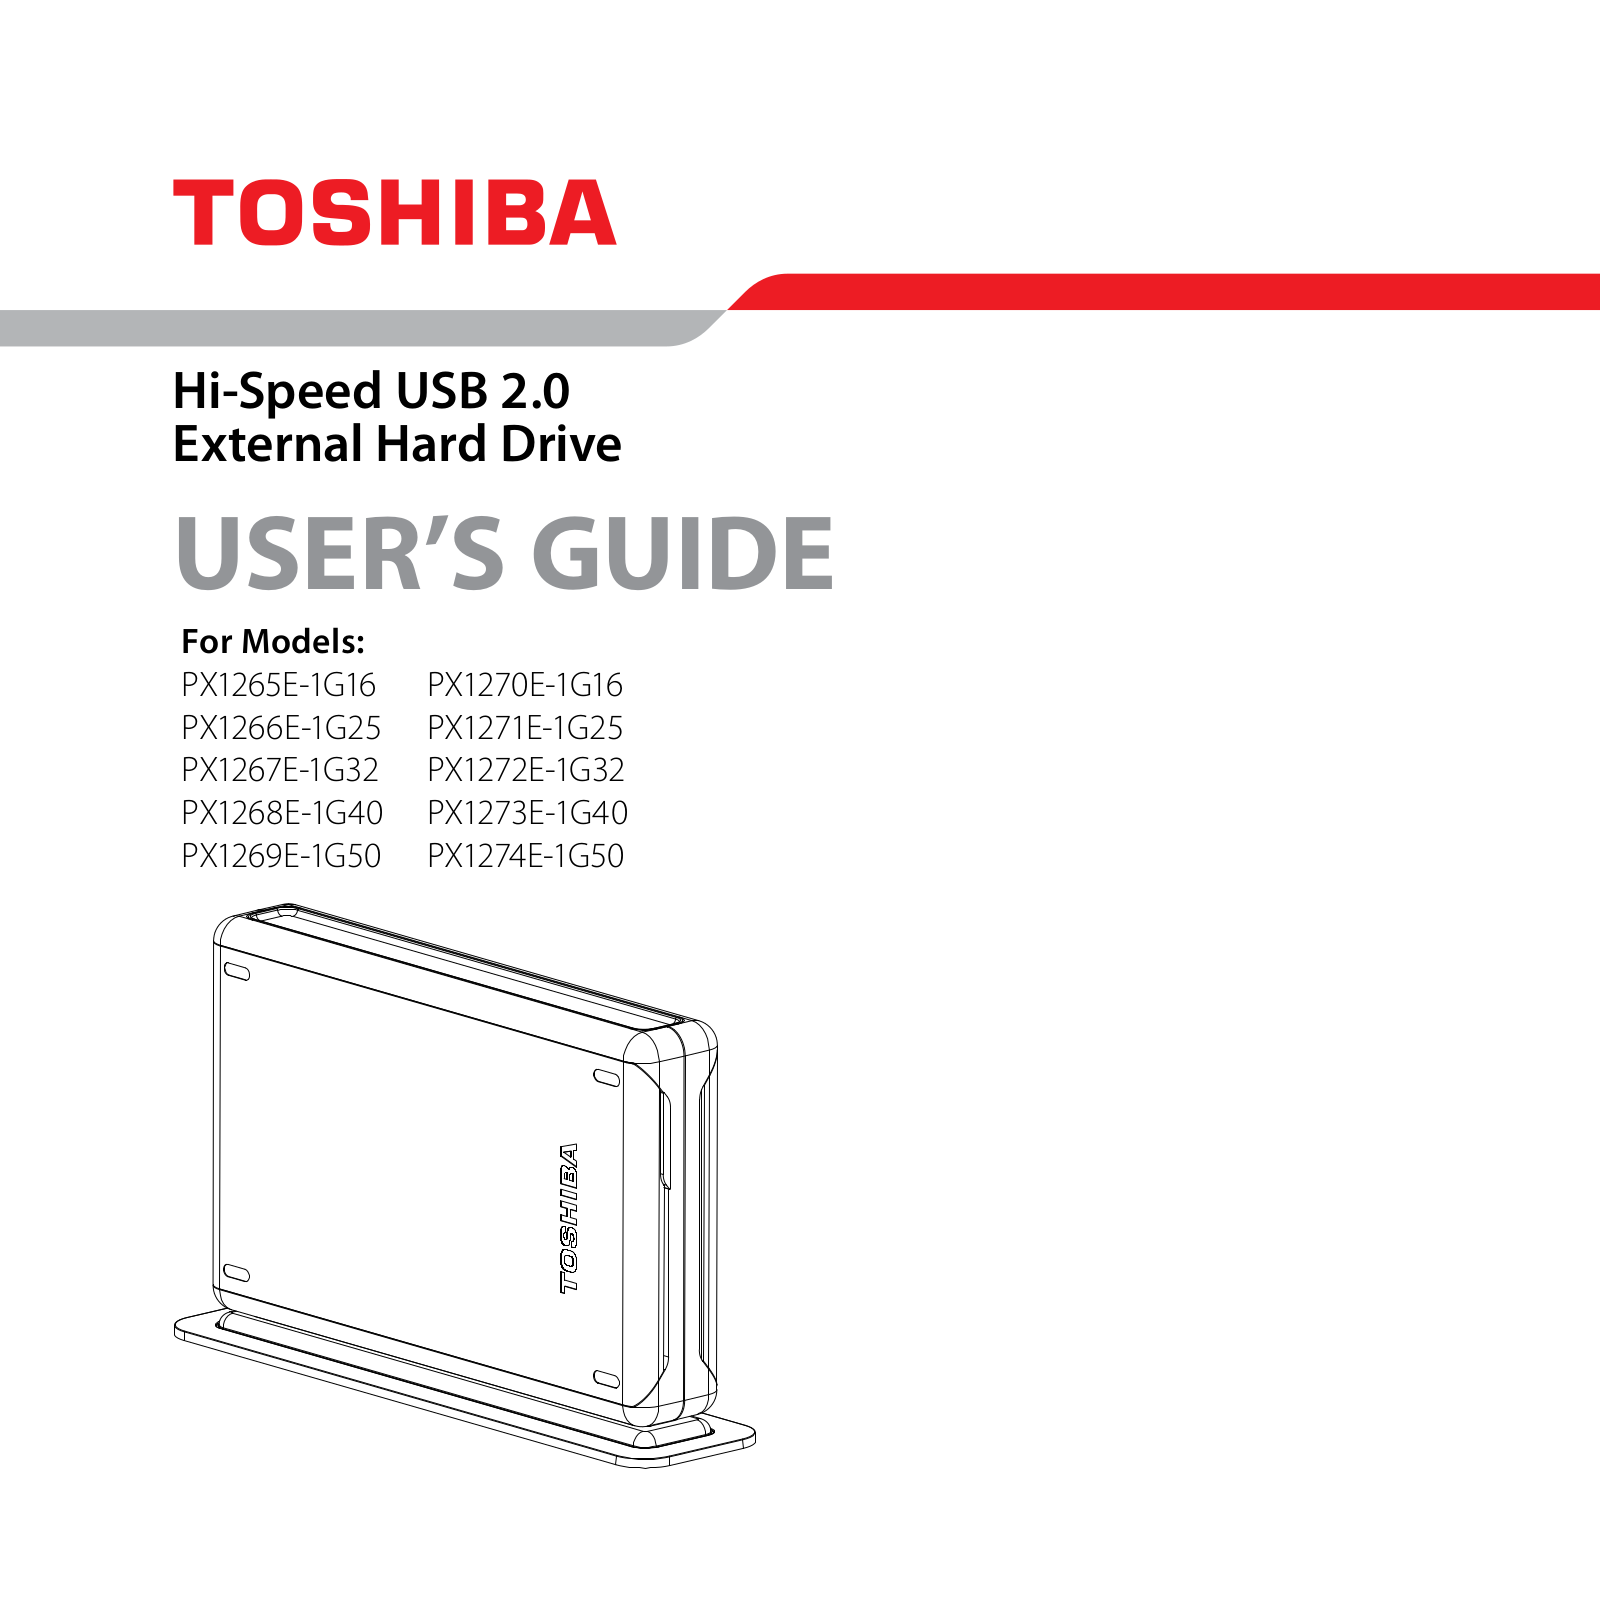 Toshiba PX1265E-1G16, PX1266E-1G25, PX1267E-1G32, PX1268E-1G40, PX1269E-1G50 Manual